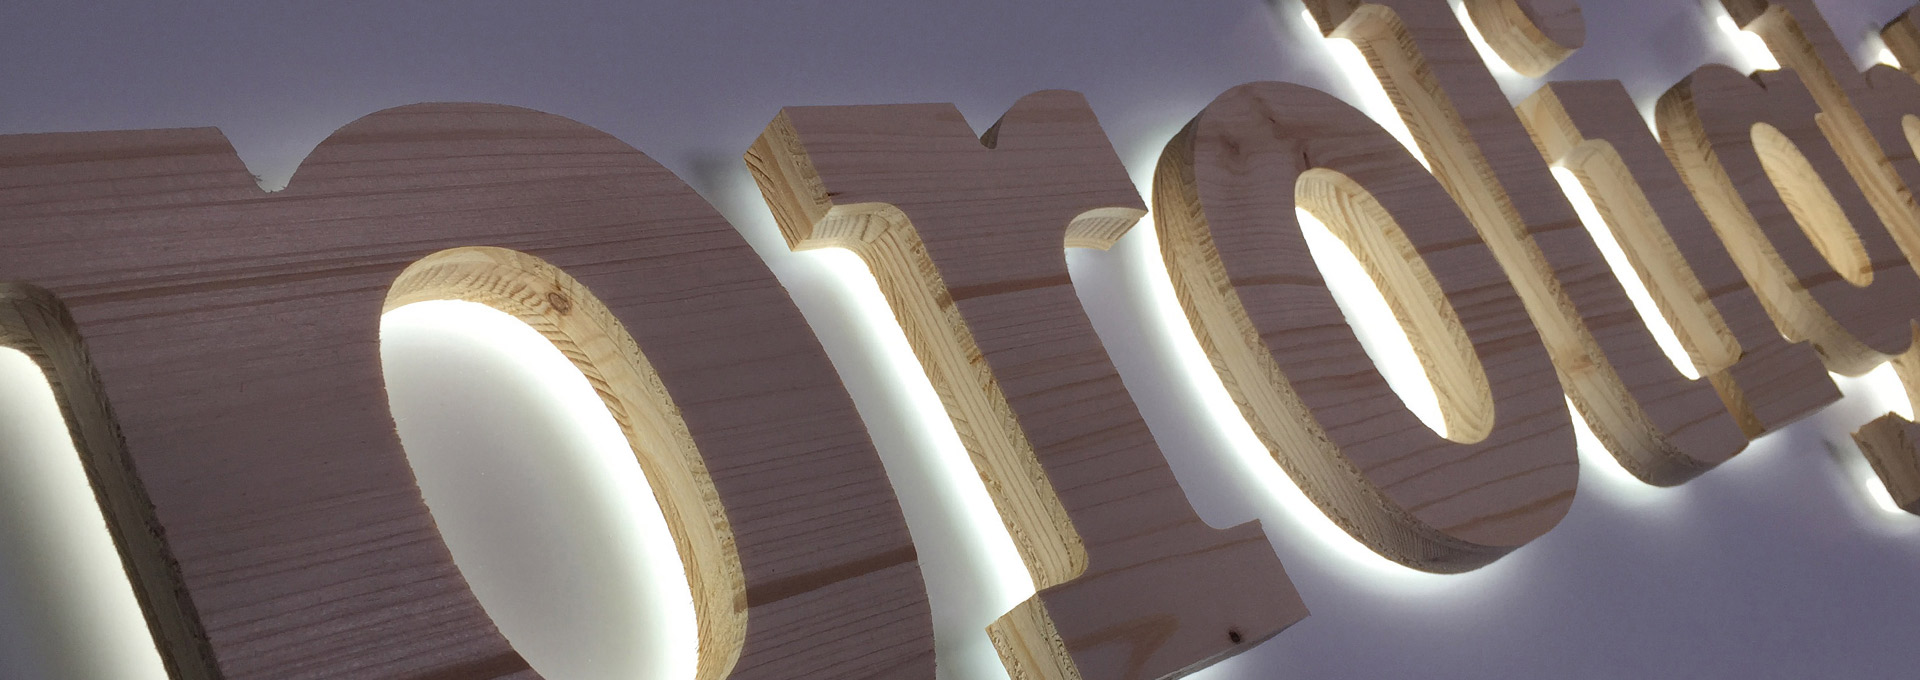 Leuchtkästen mit indirekt beleuchteten Buchstaben - Holz